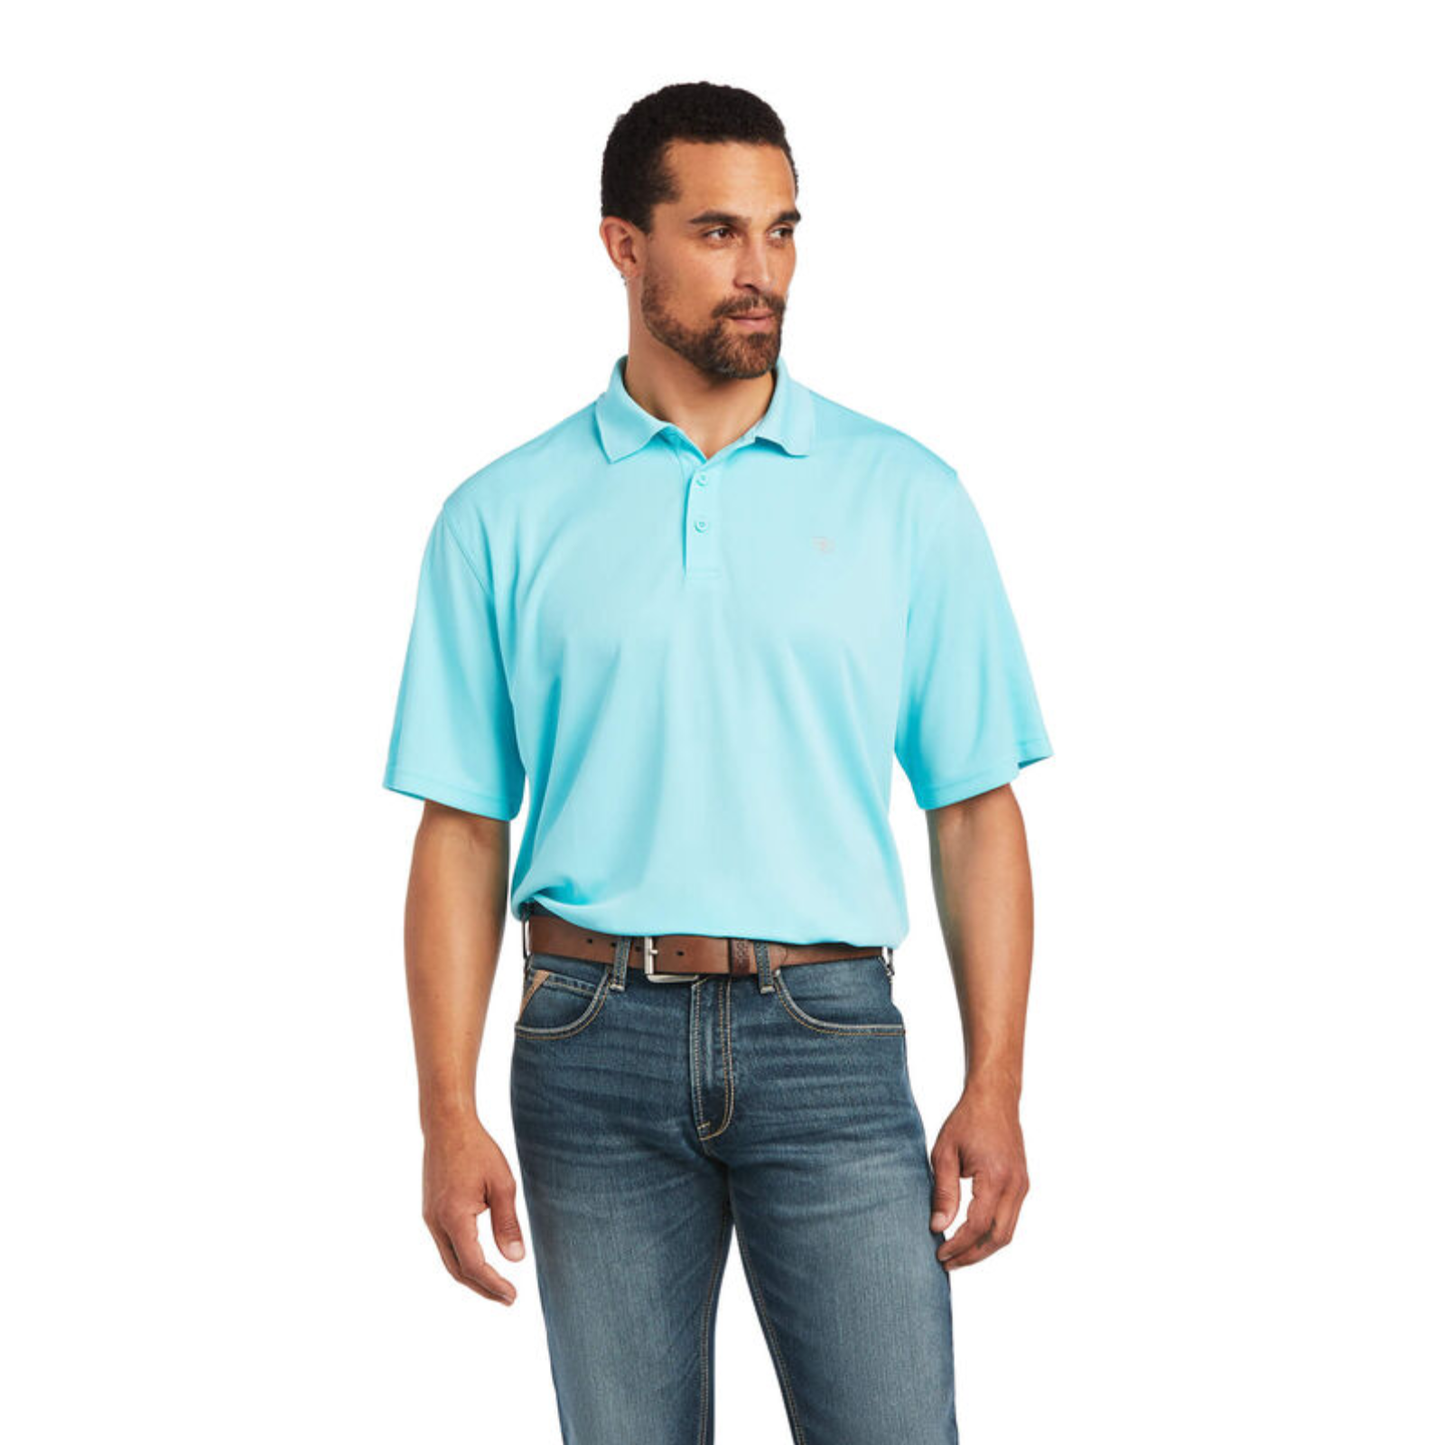 Ariat® Men's TEK Short Sleeve Blue Radiance Polo Shirt 10040651